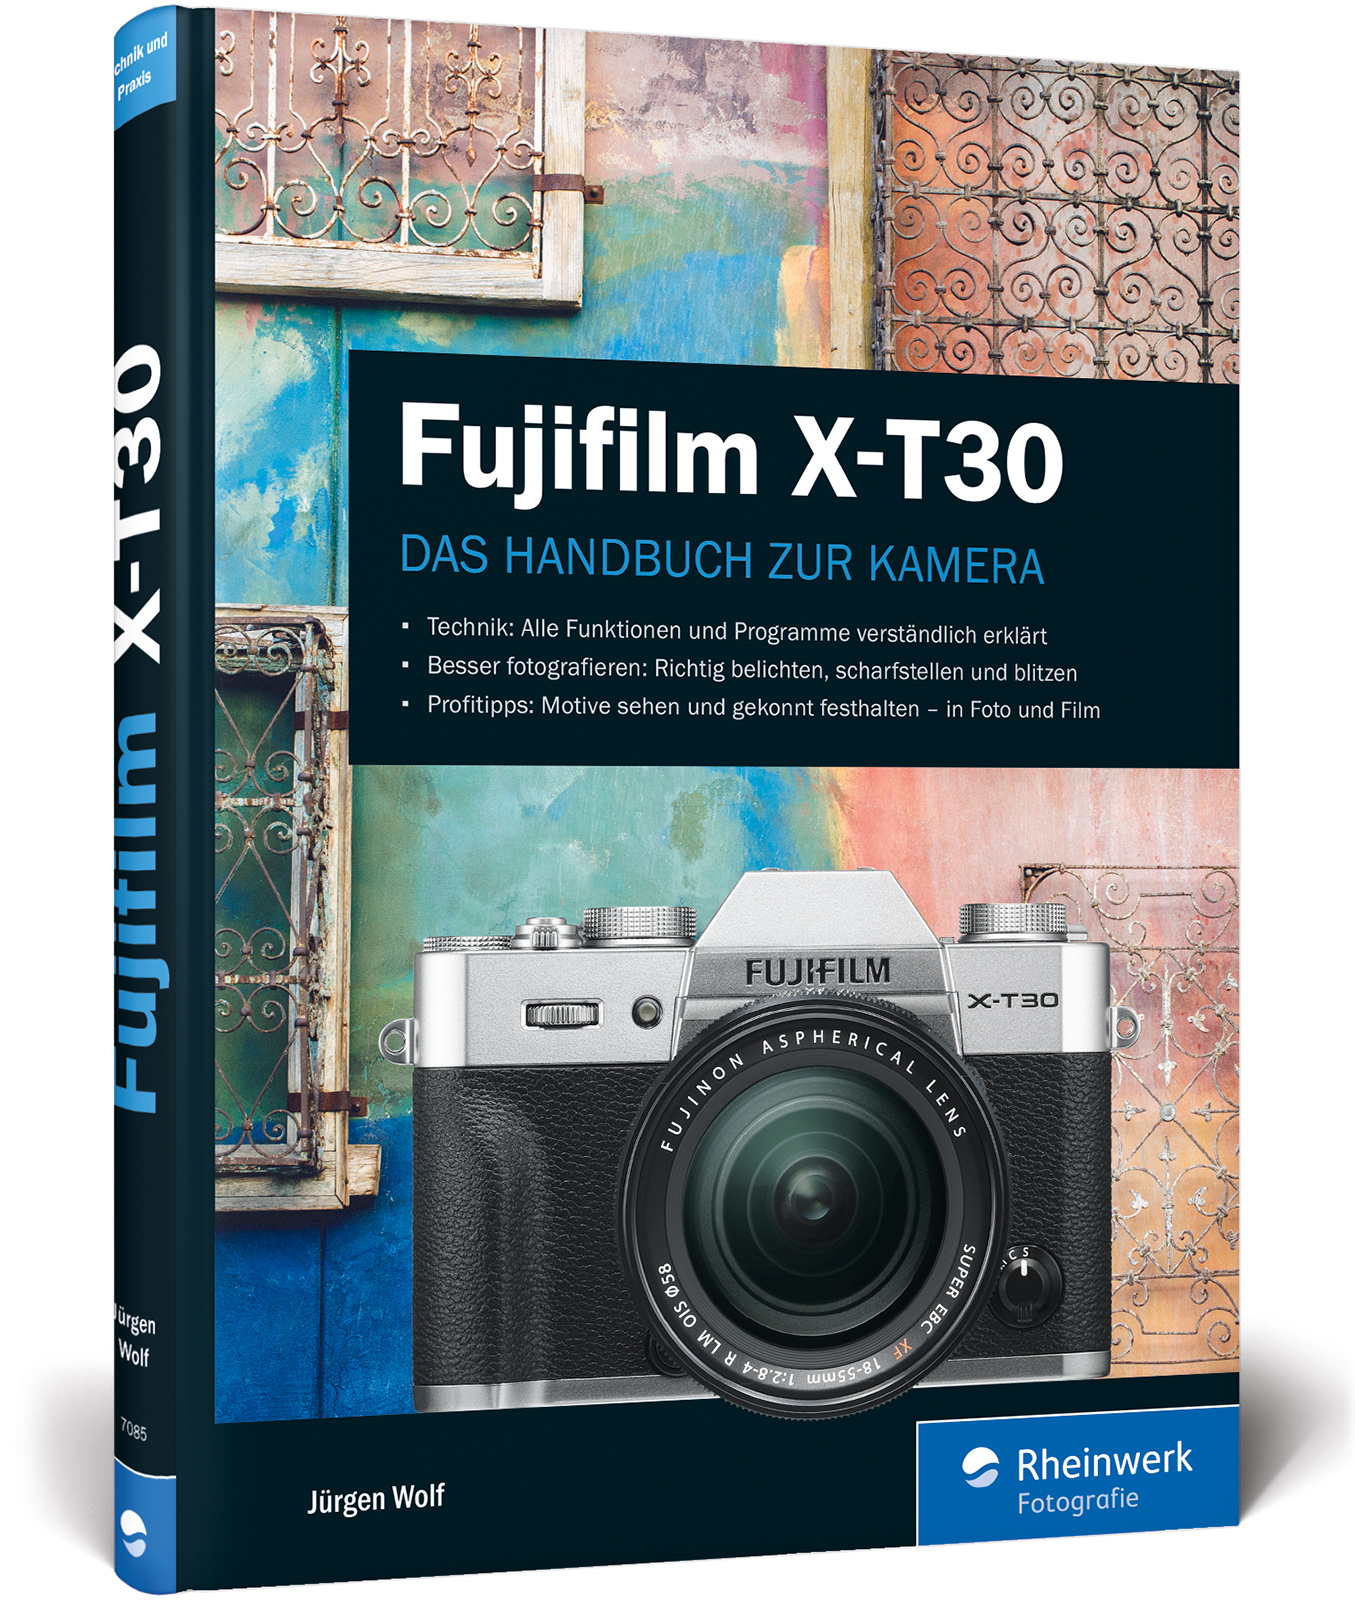 Fujifilm X-T30 Jürgen Wolf - Bild 1 von 1